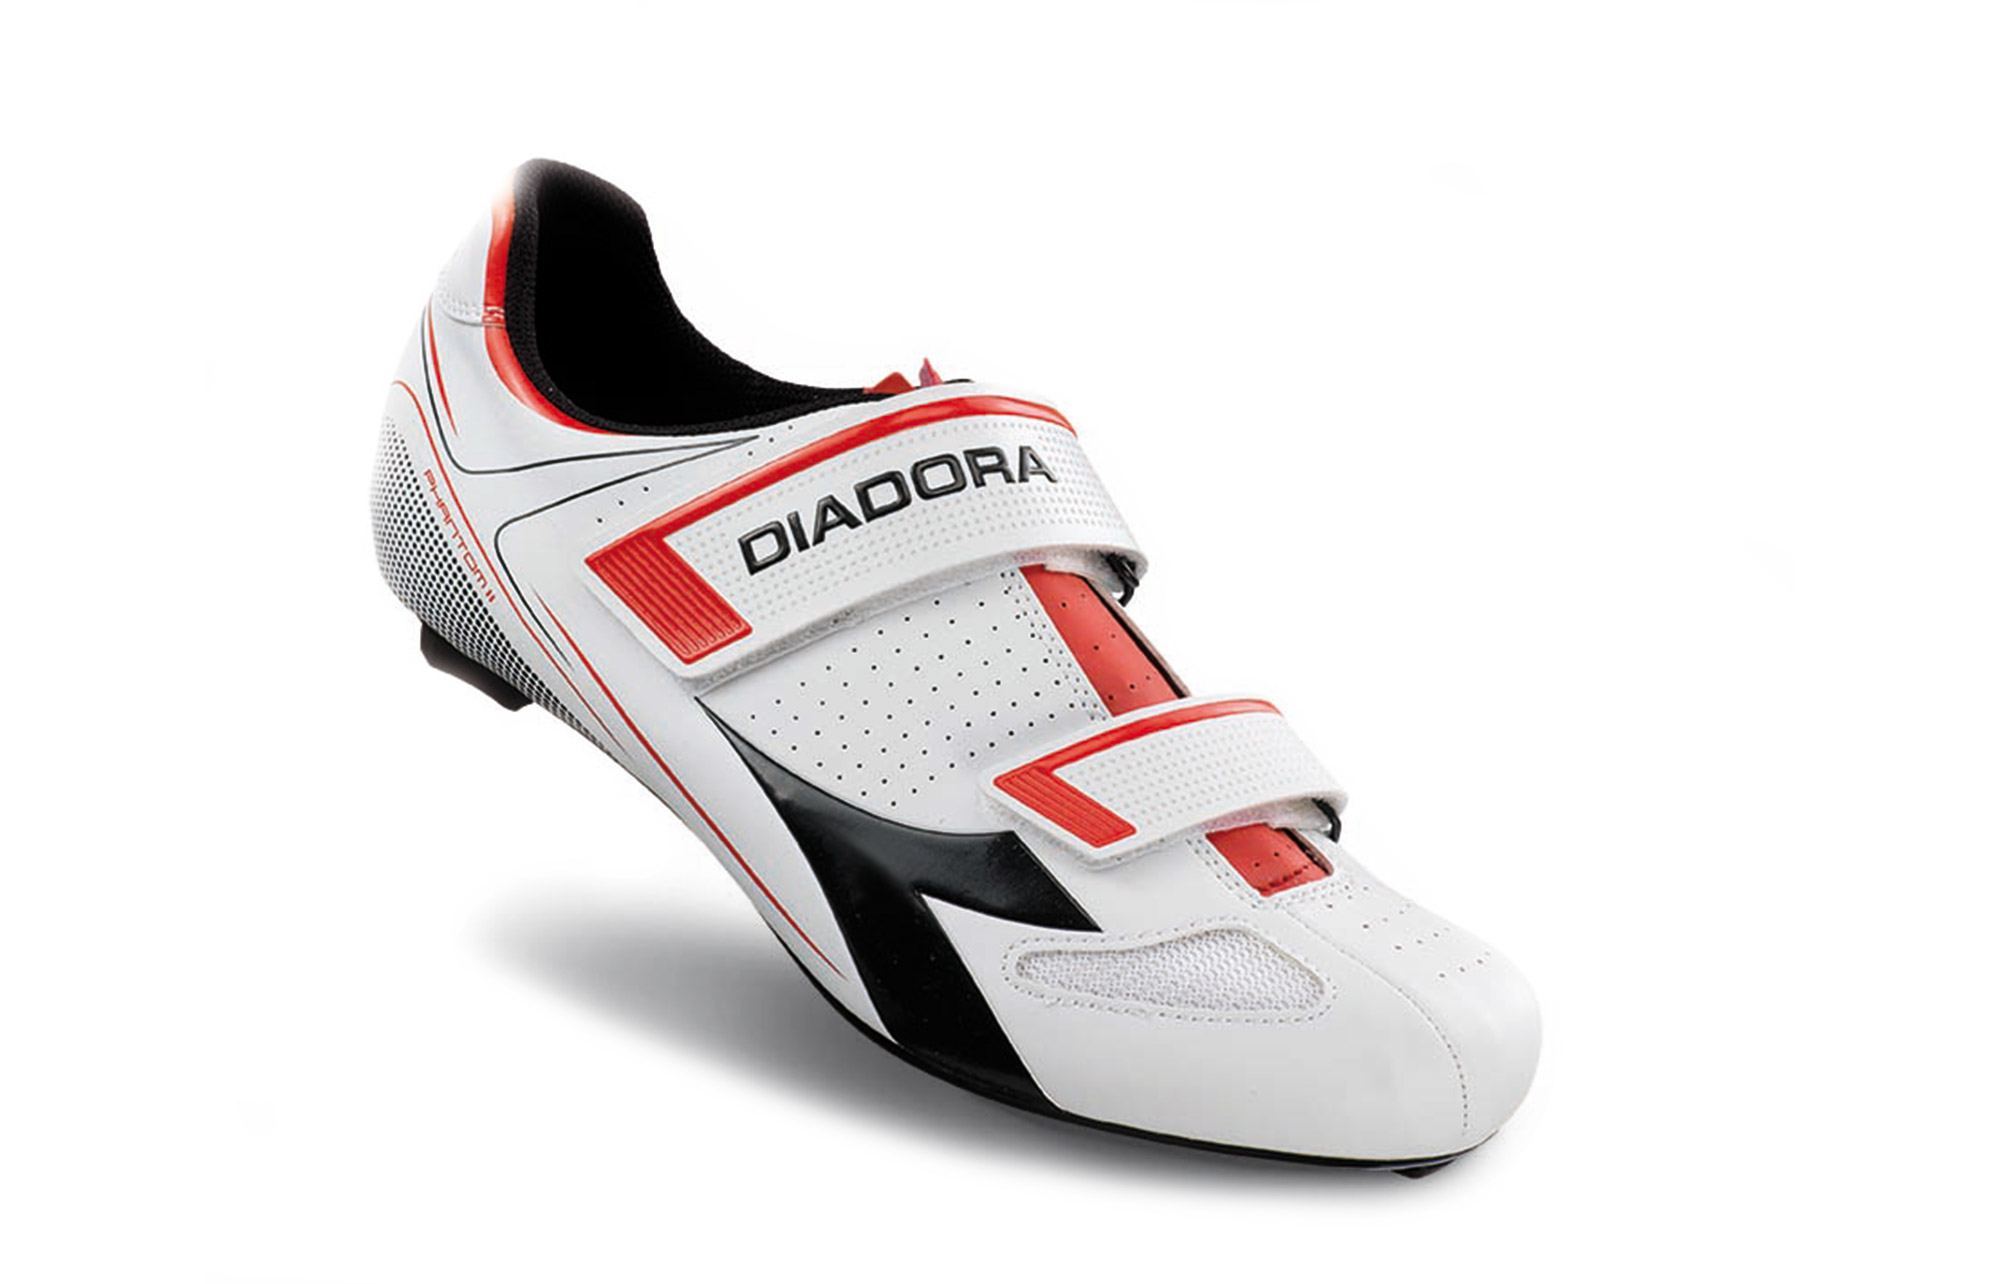 diadora road shoes